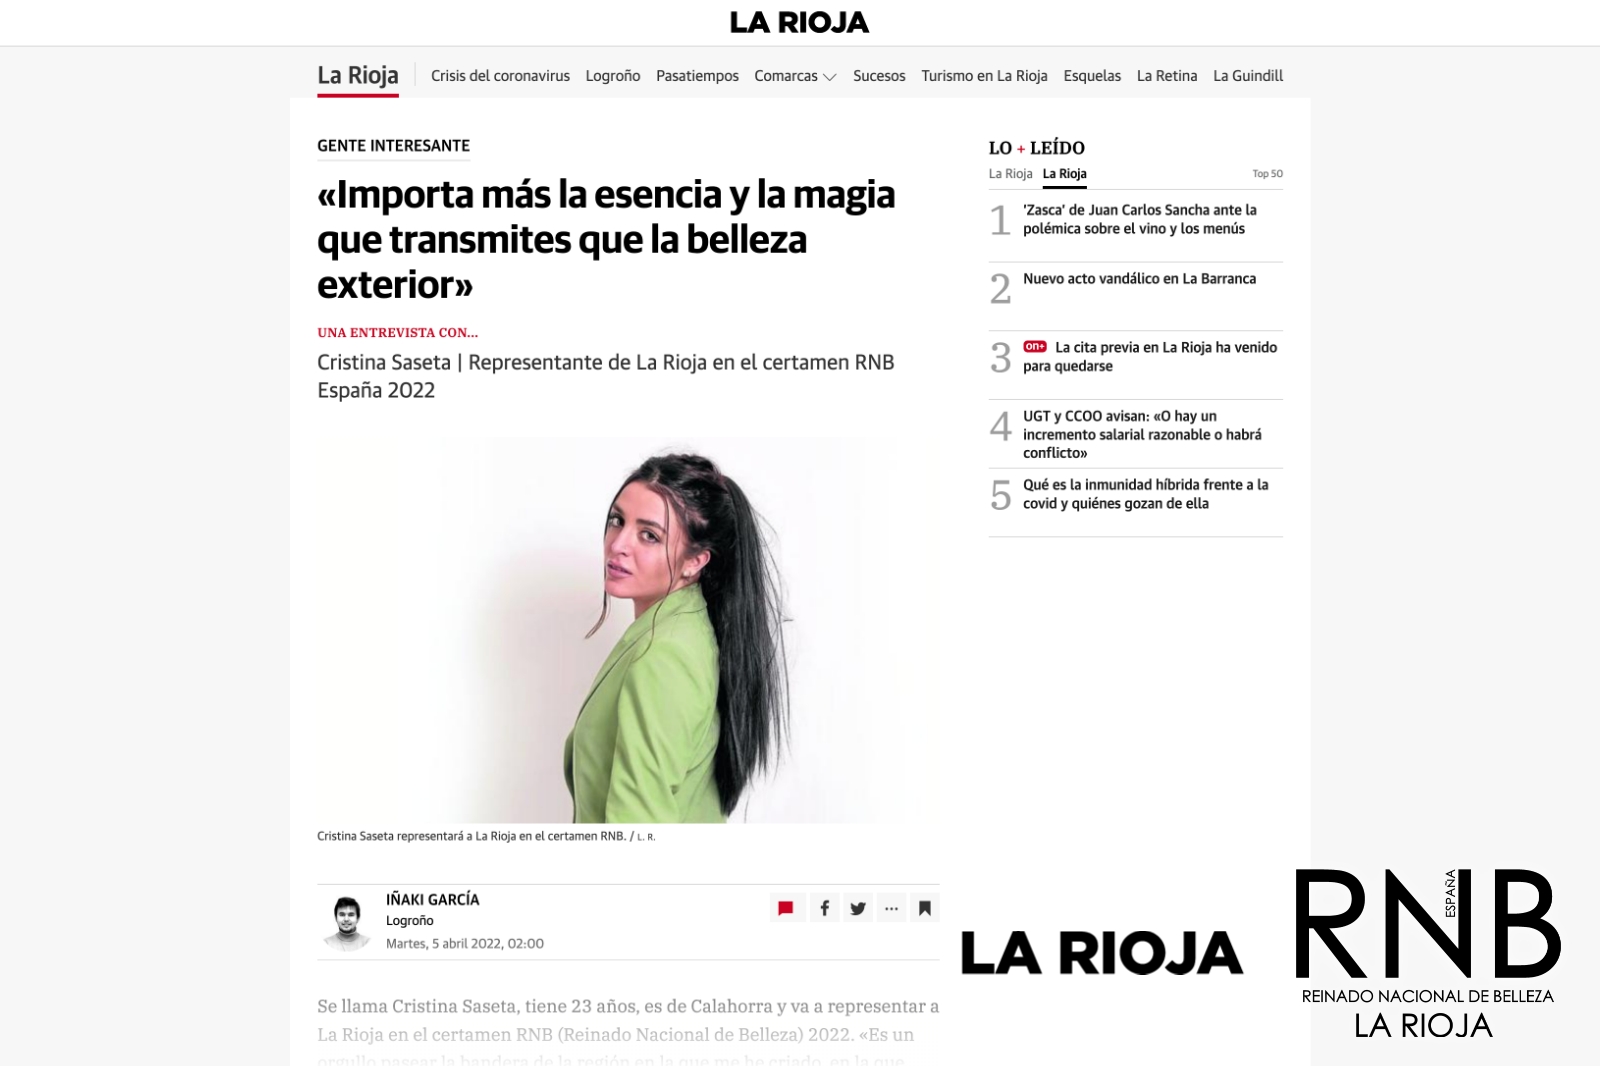 Cristina Saseta Miss RNB La Rioja 2022 Noticias de La Rioja